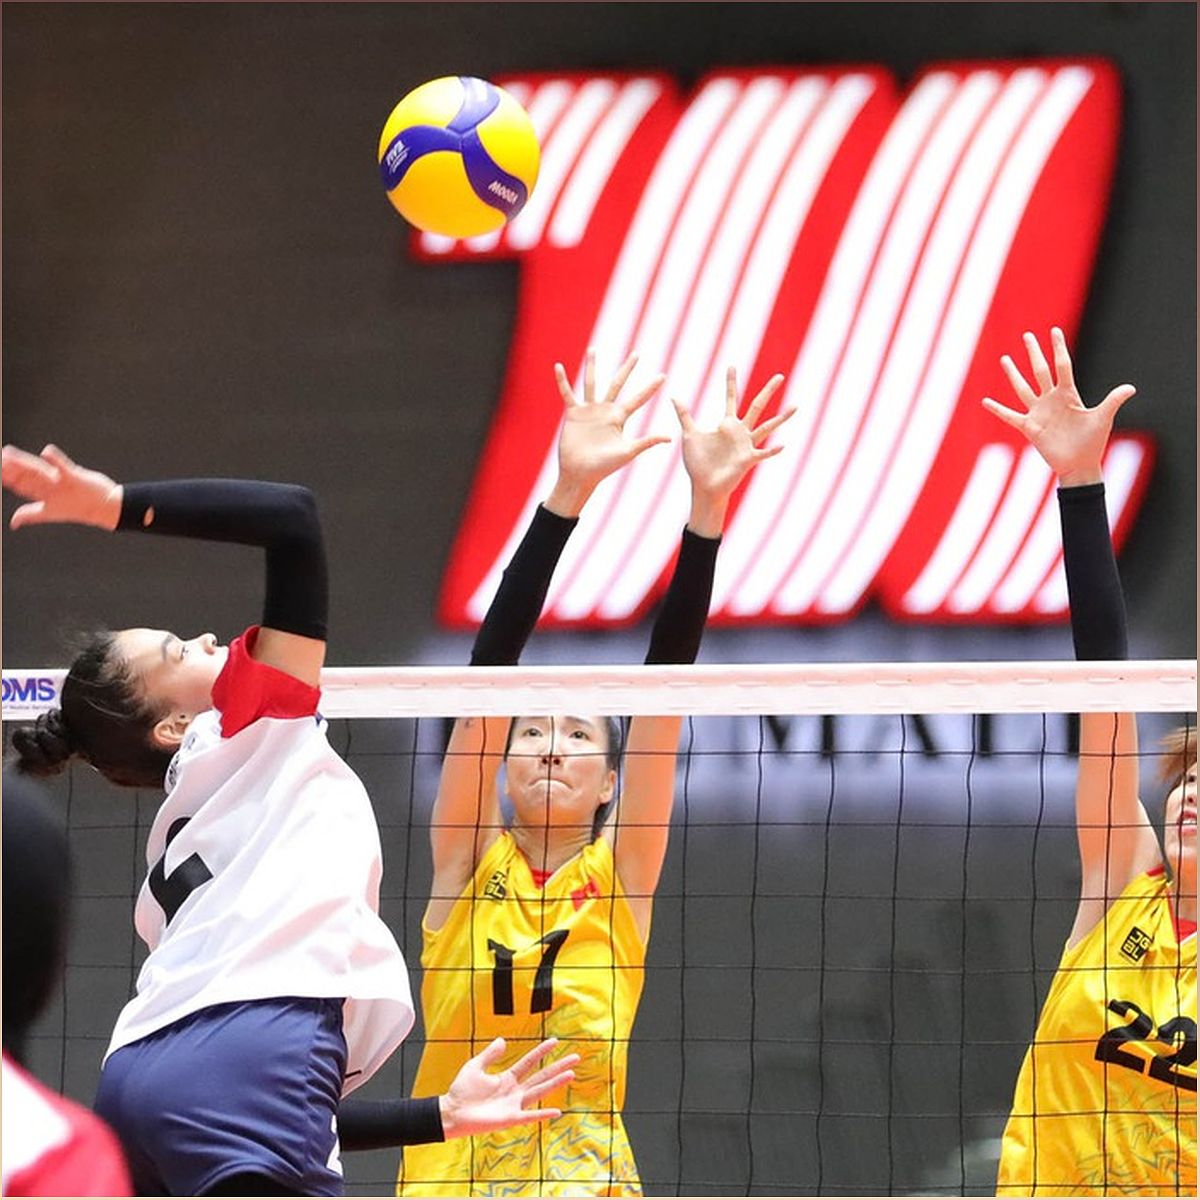 Tuyển bóng chuyền nữ Việt Nam thắng dễ Uzbekistan 3-0 tại Giải bóng chuyền nữ châu Á 2023 - -1468123884